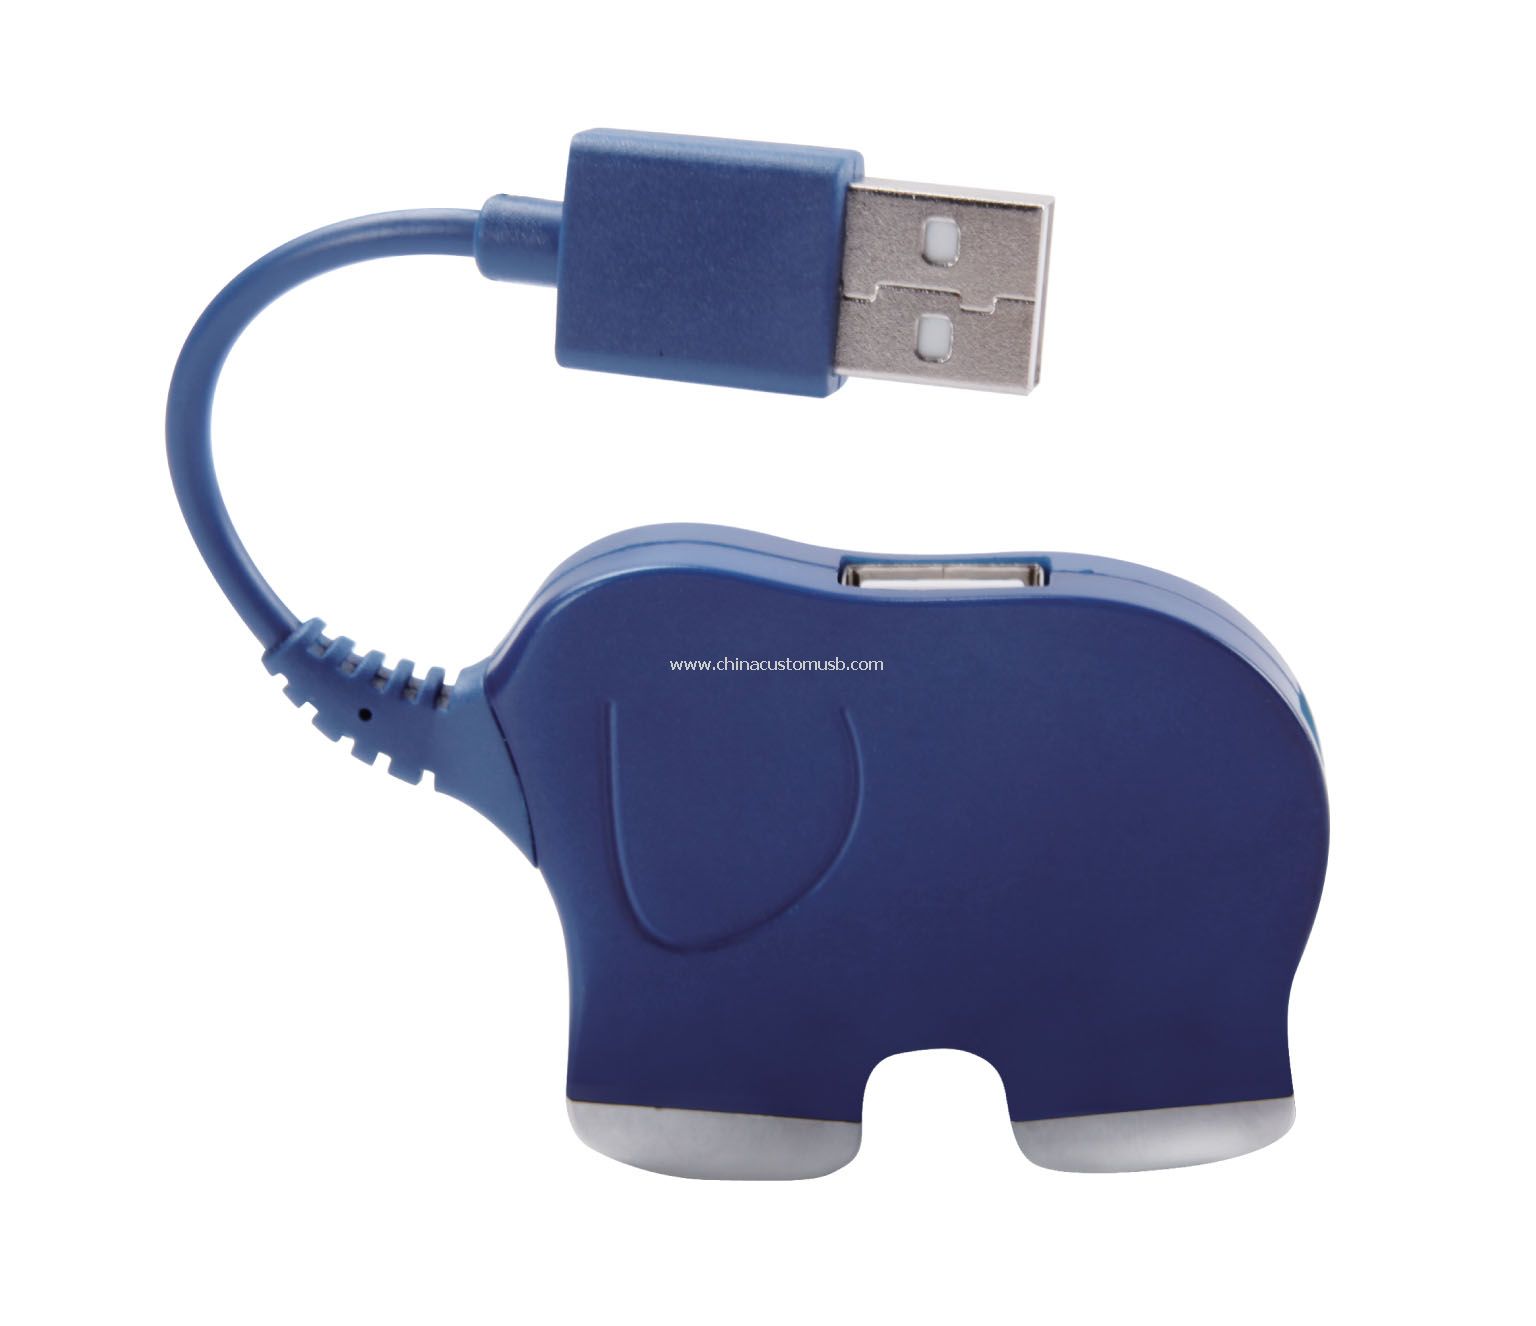 Koncentrator USB słoń